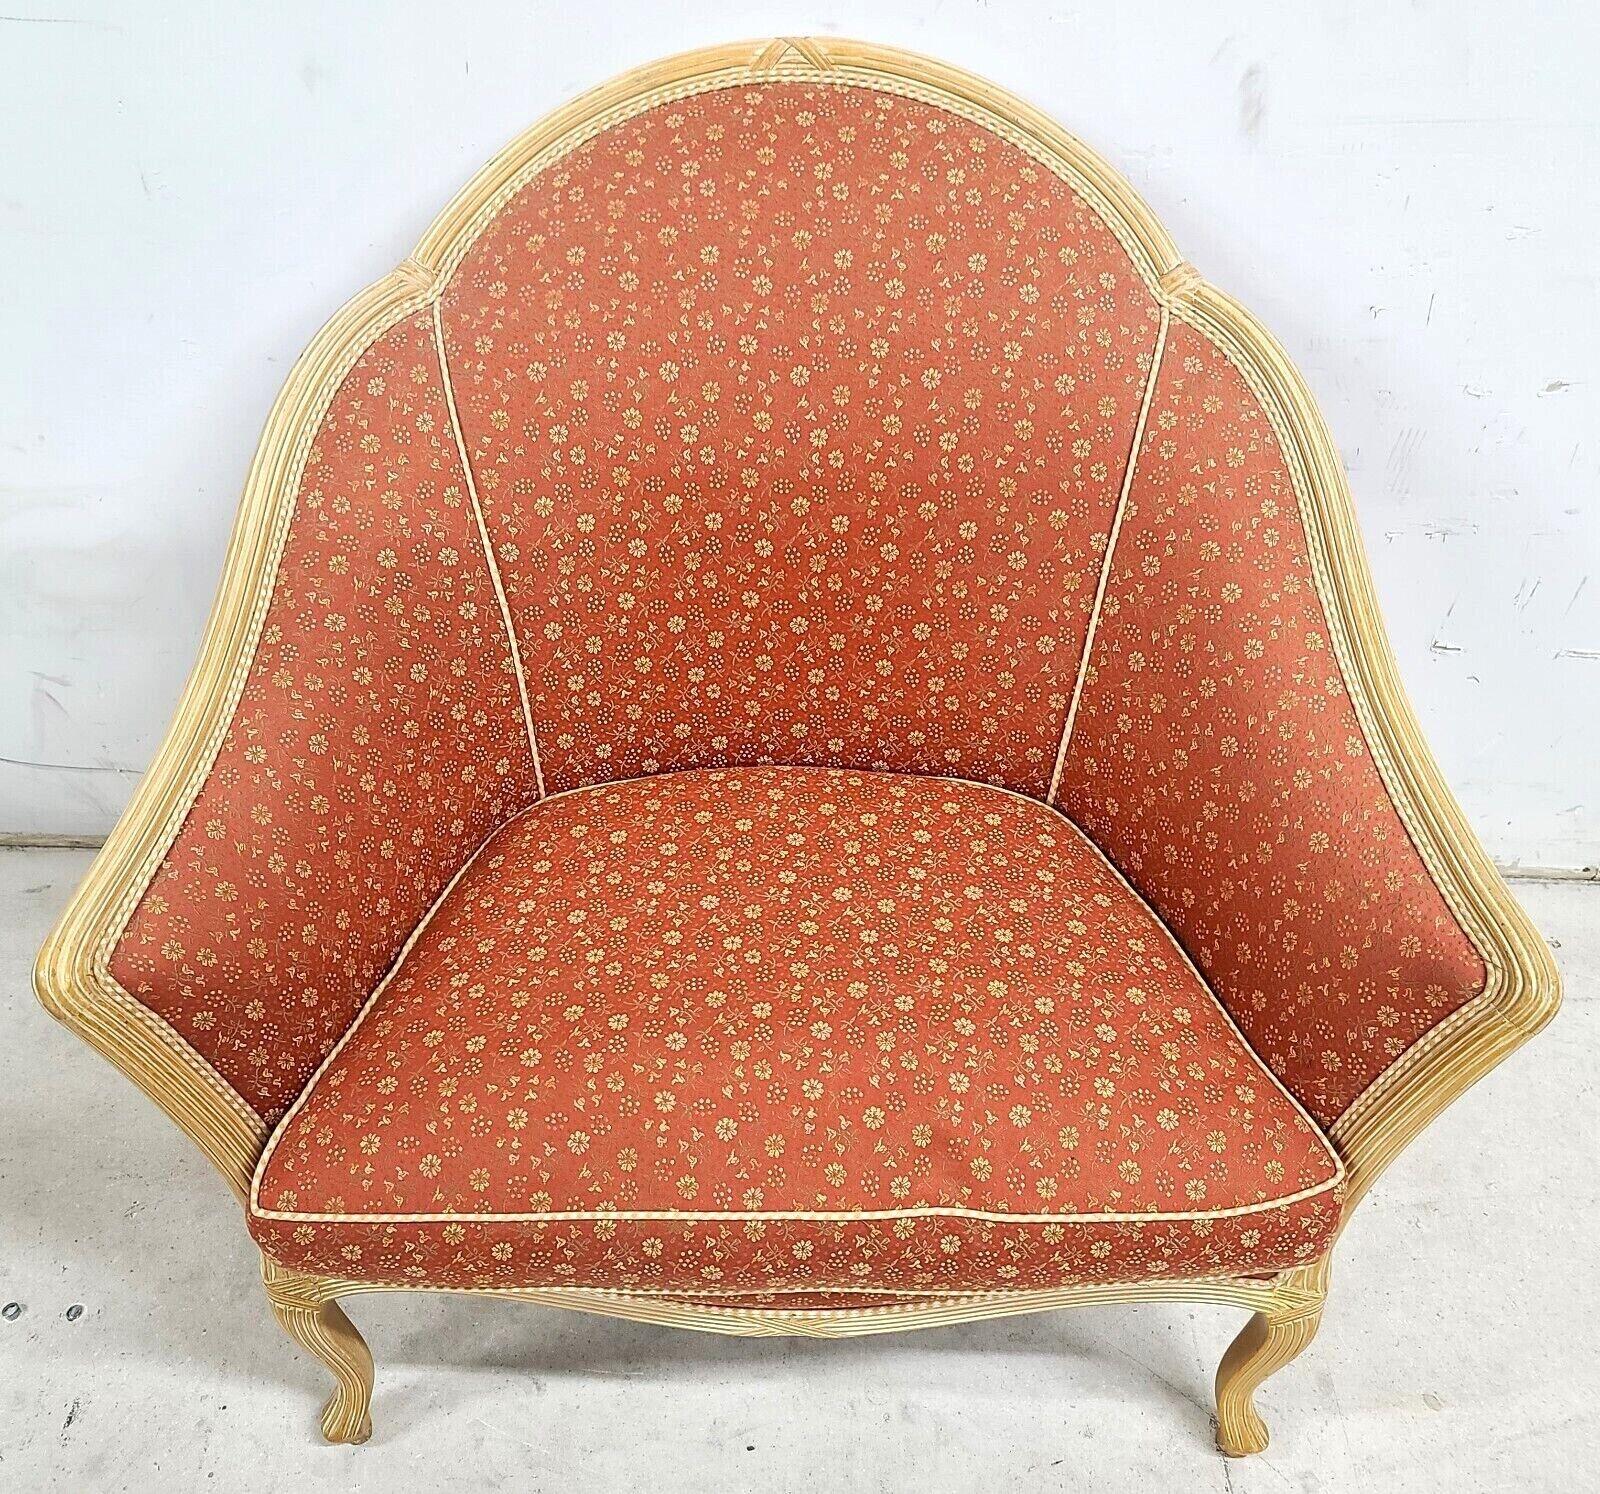 Canapé de style provincial français Louis XV à motifs floraux abricot sur mesure
Le coussin d'assise est en mousse entourée de plumes de duvet pour un confort maximal sans s'affaisser.

Mesures approximatives en pouces
33